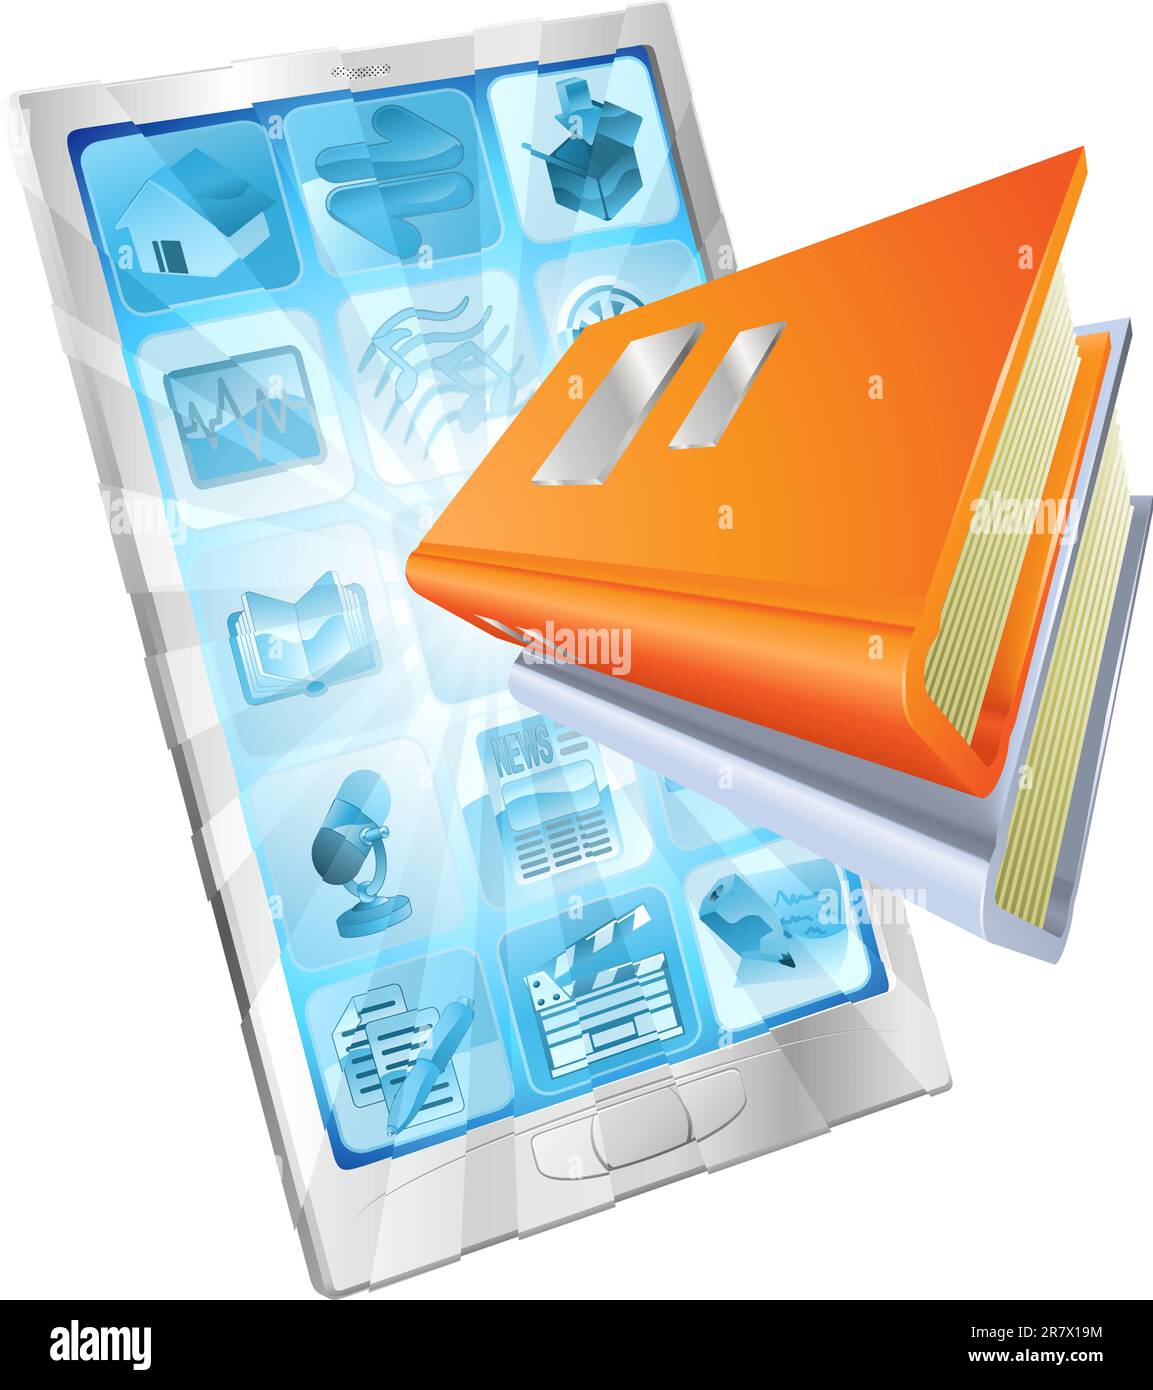 Buchsymbol Telefonkonzept Bildschirm für Reader-apps, Ebooks, e-Learning, Online-Datenbank aus. Stock Vektor